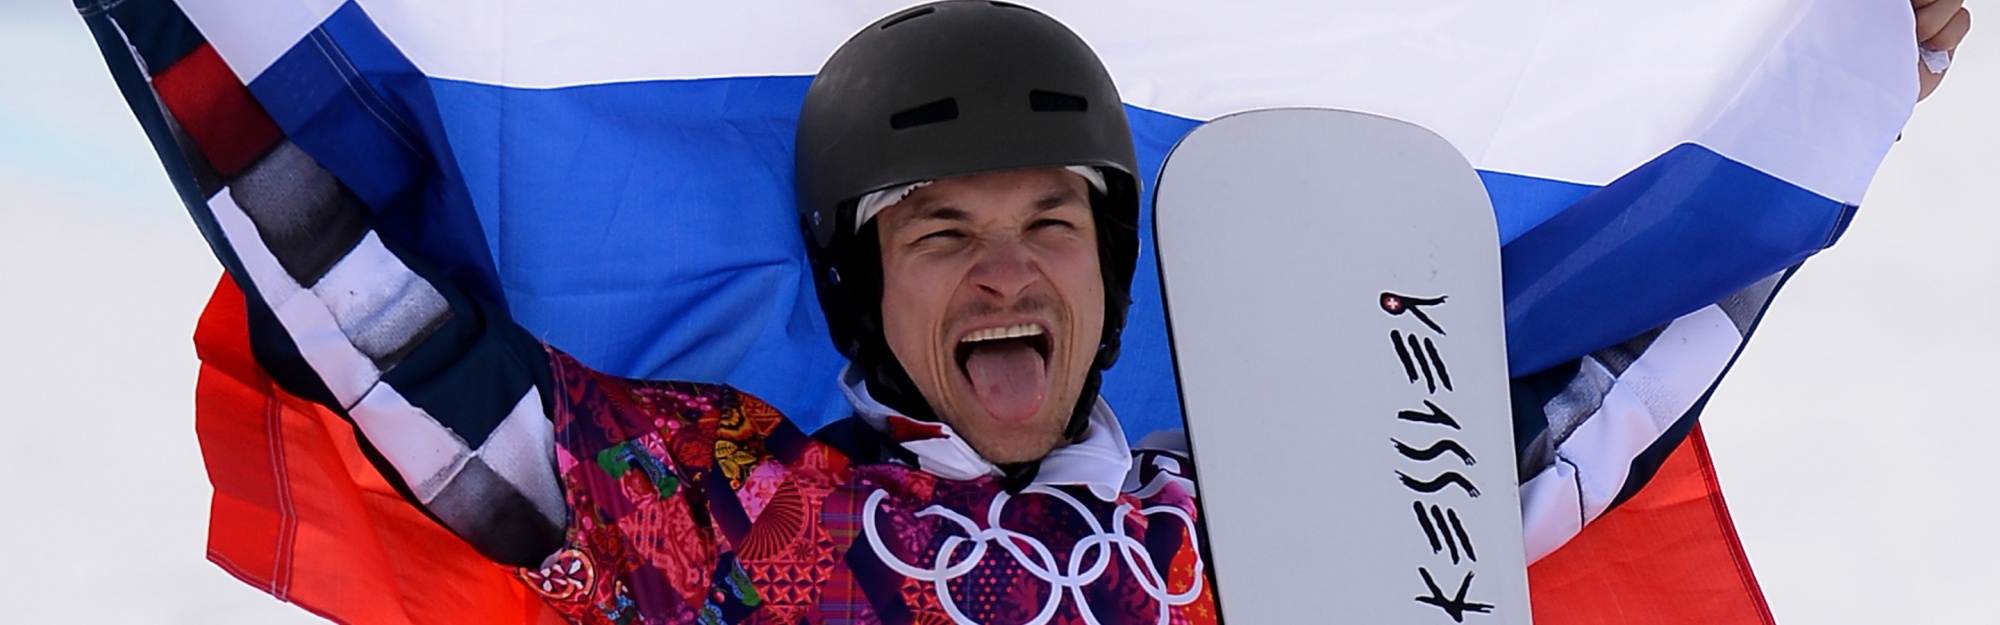 Vic Wild - Snowboarder